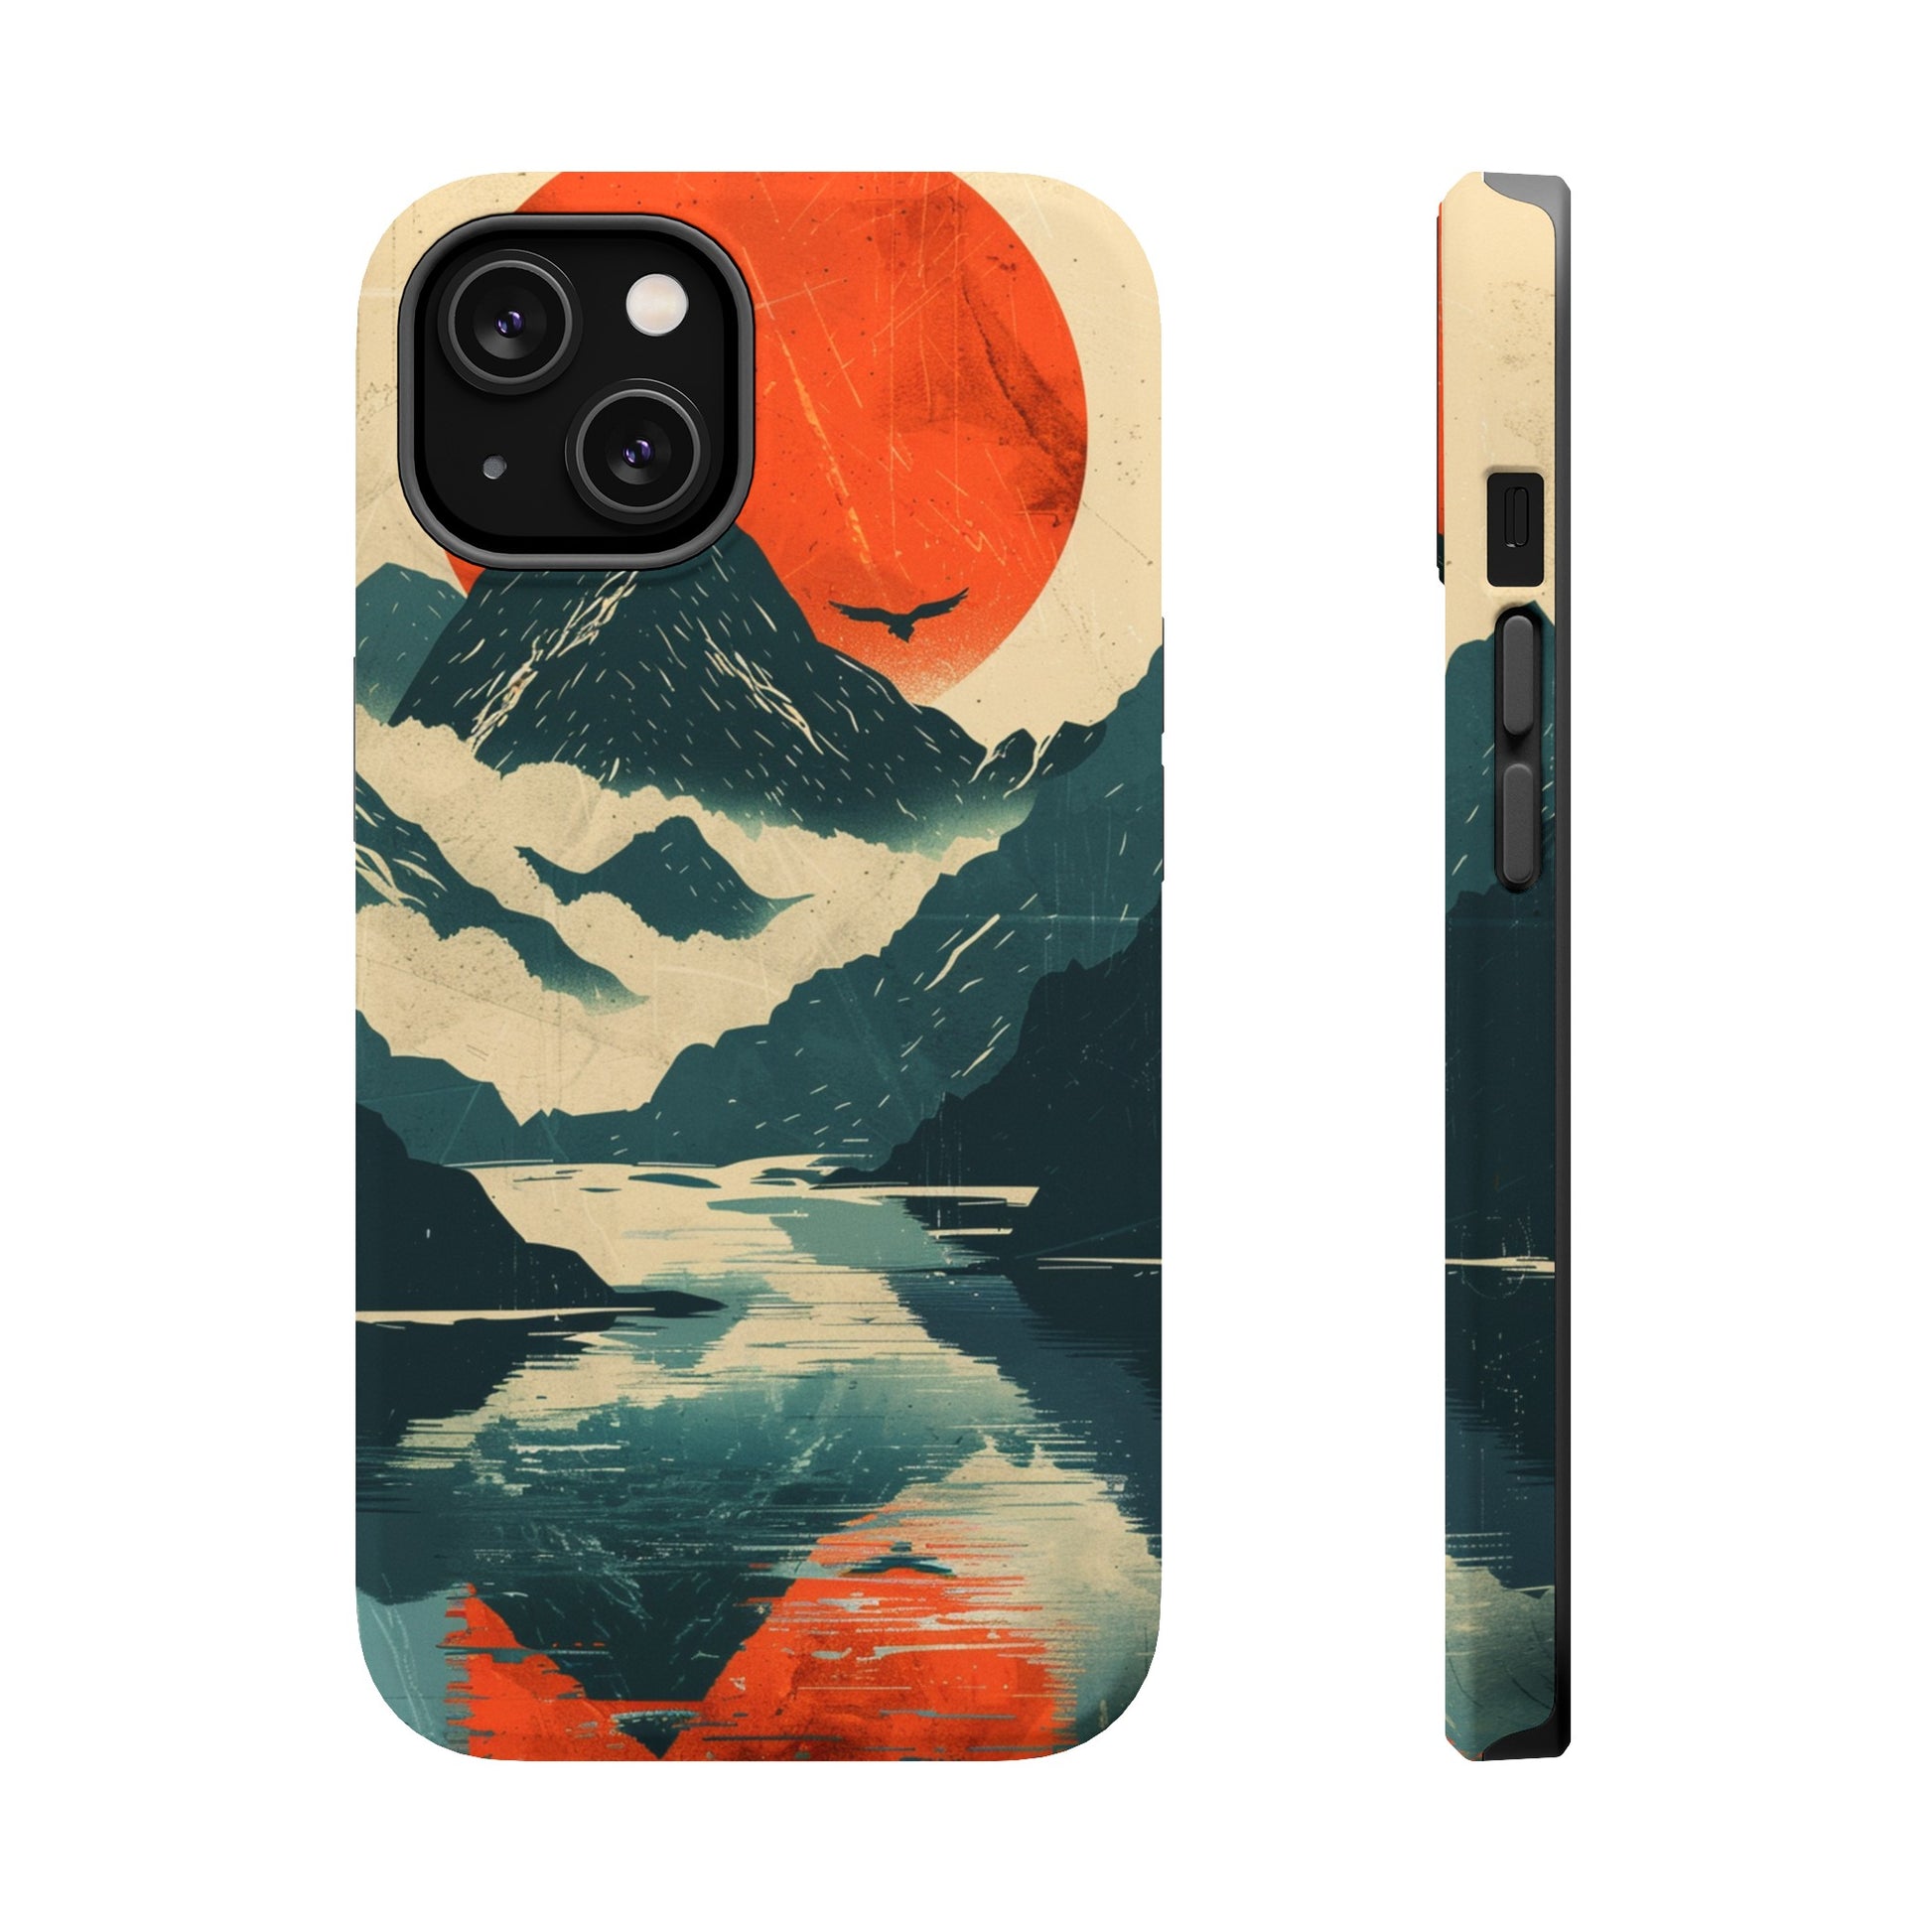 Landscape phone case